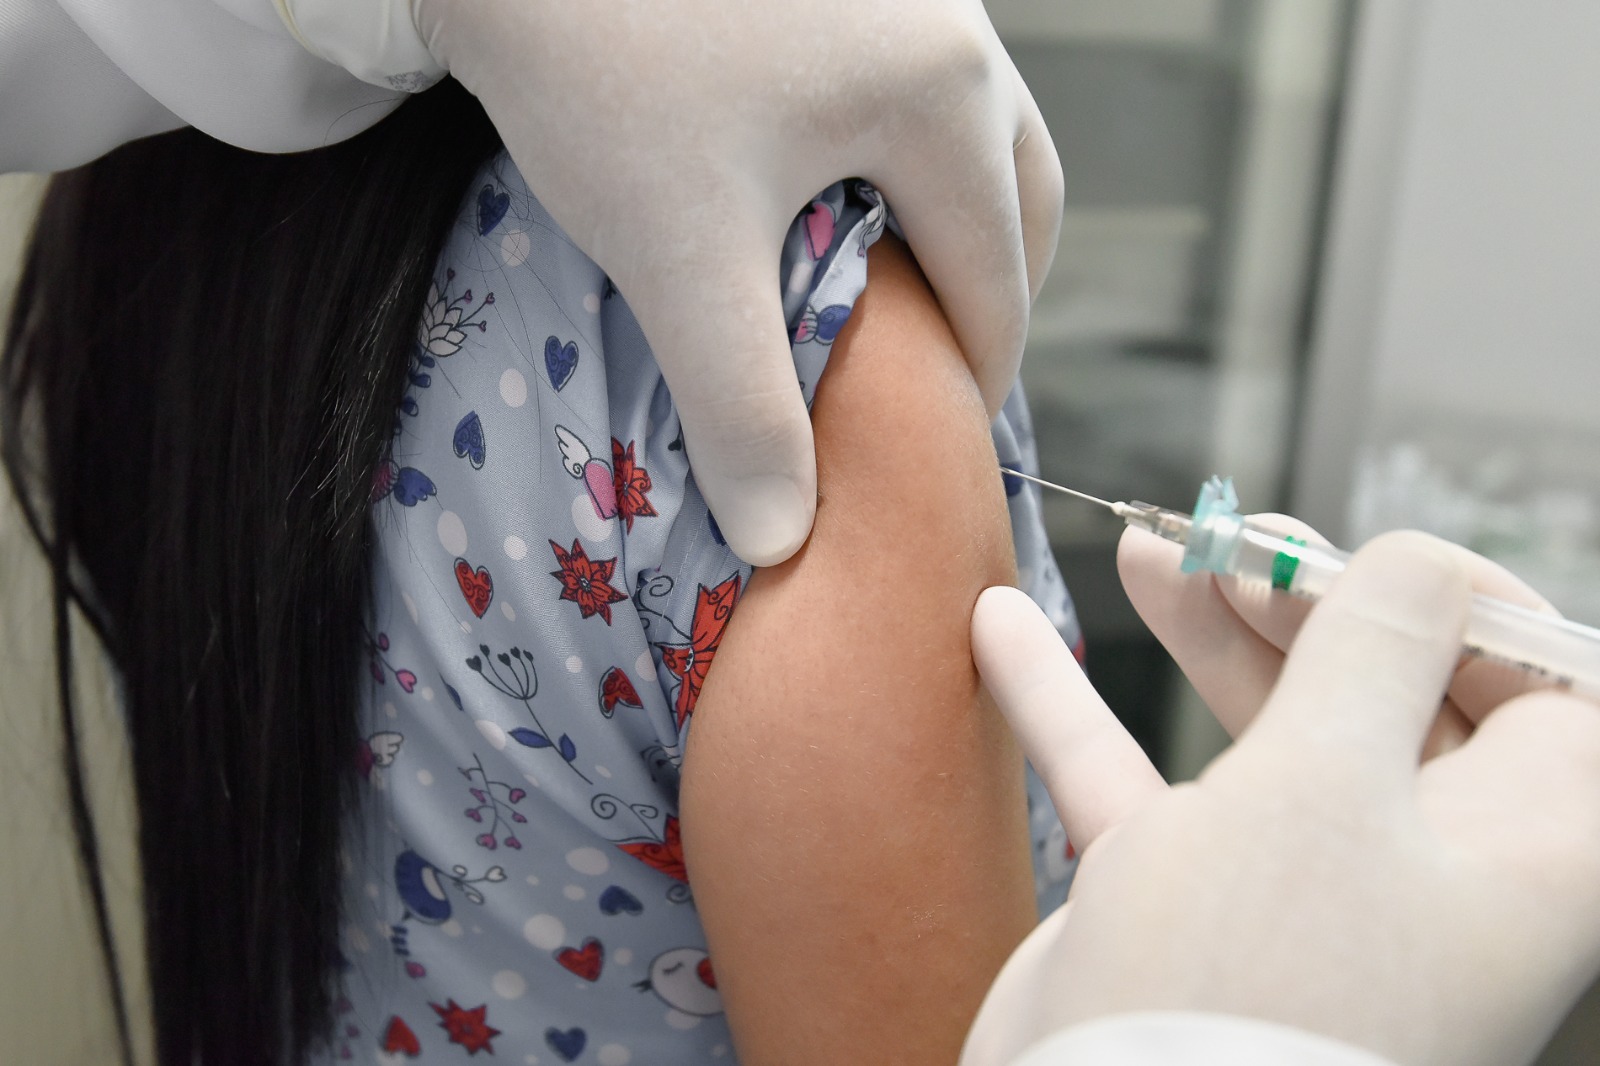 Vacinas contra o HPV e Varicela deverão estar disponíveis nas salas de vacinação até o final da próxima semana 